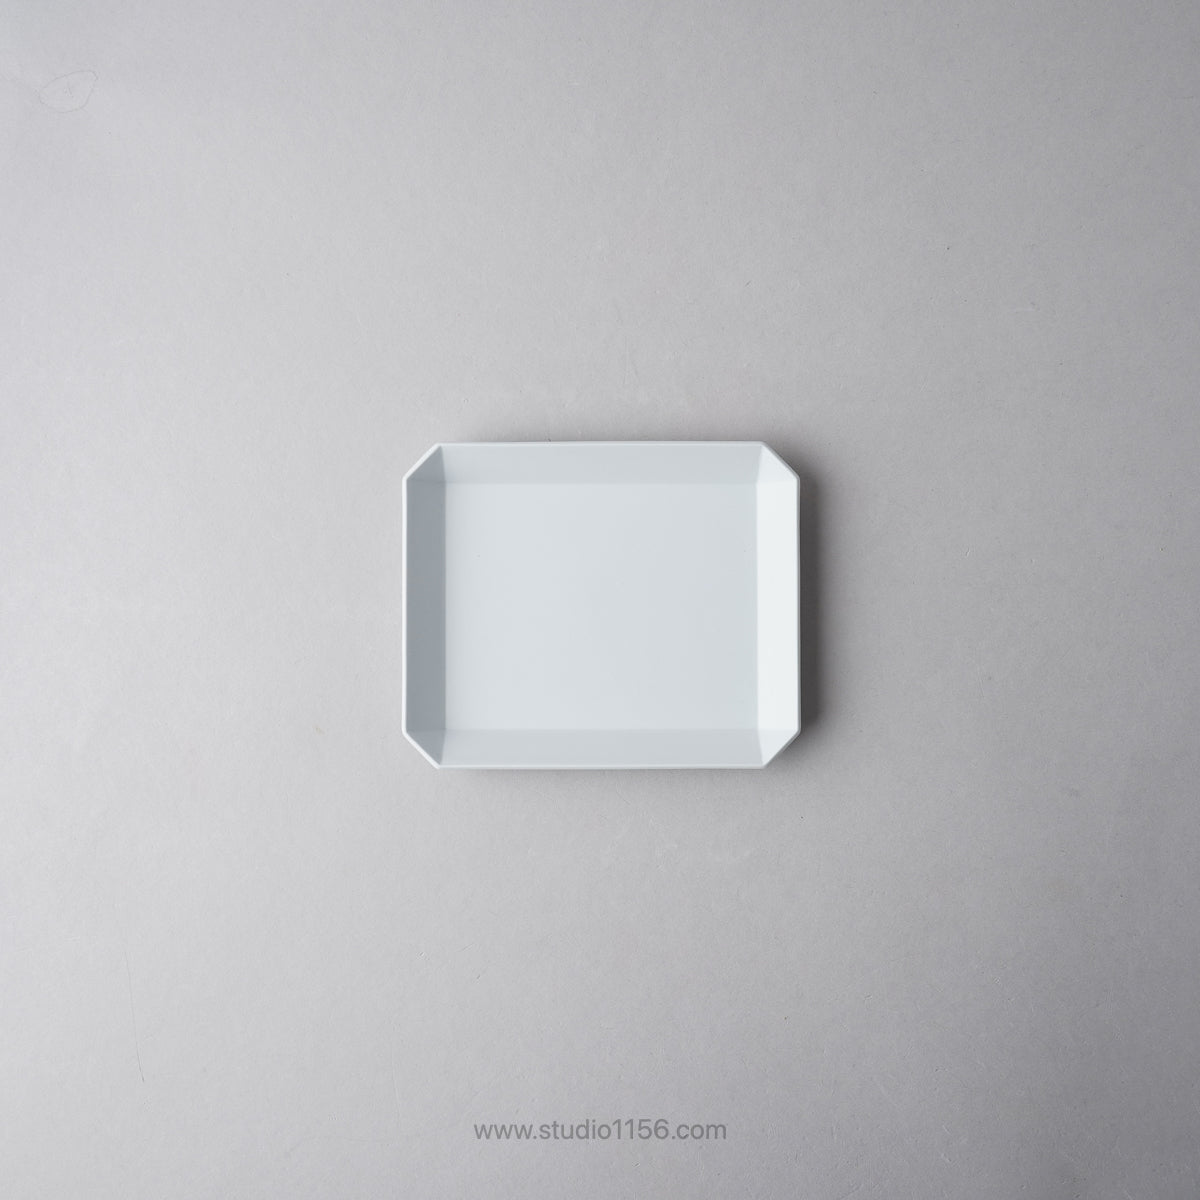 有田焼 スクエアプレート プレーン グレー / TY Square Plate Plain Gray 130 1616 / Arita Japan Studio1156